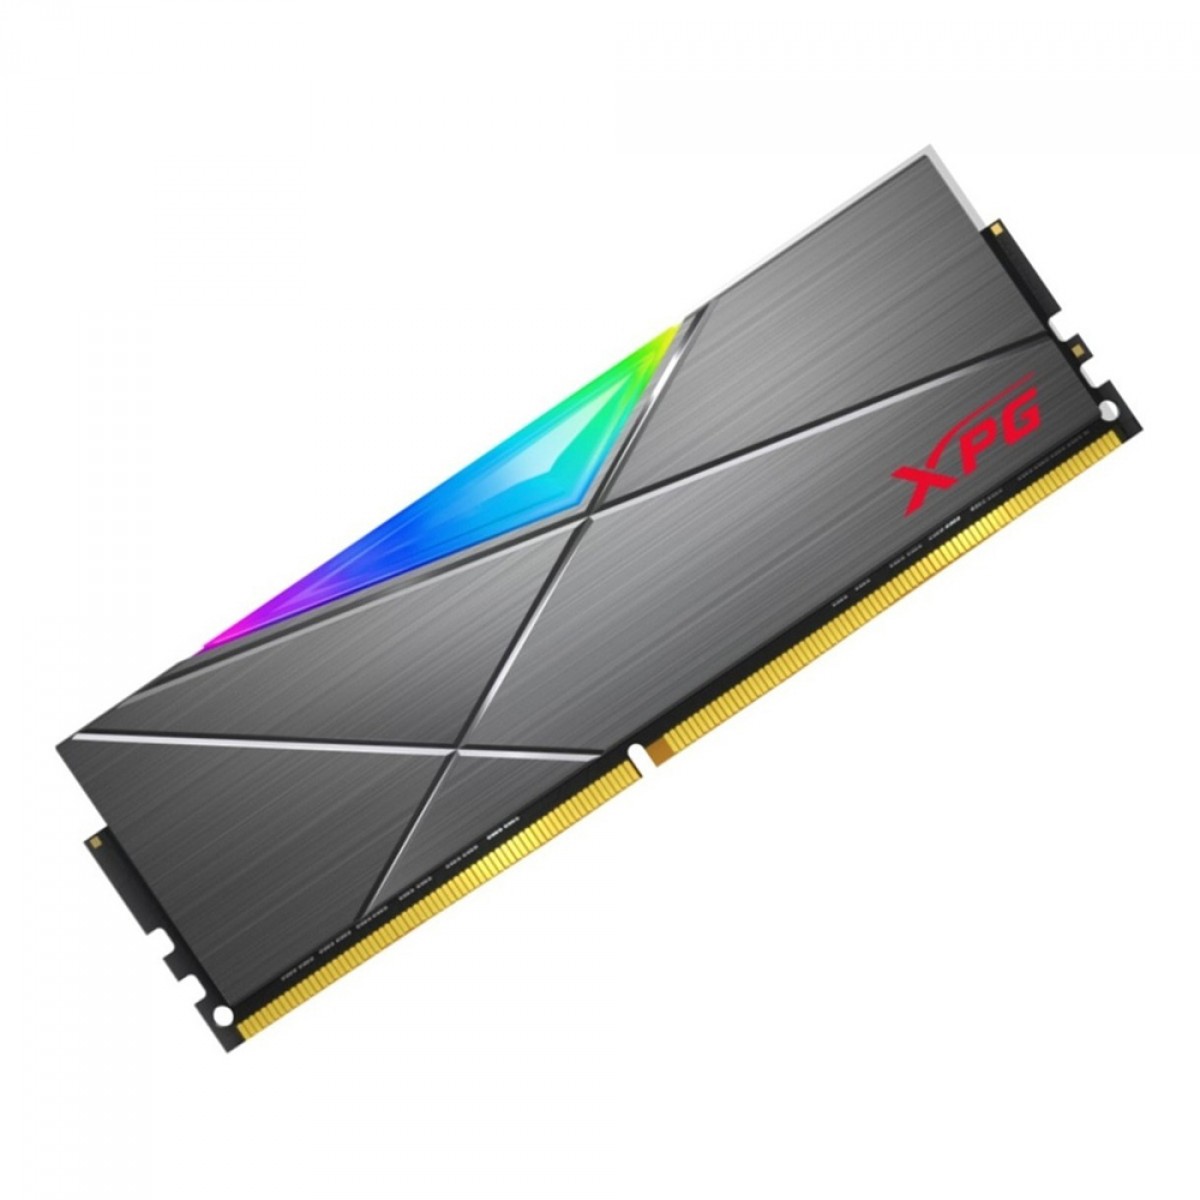 Memória DDR4 XPG Spectrix D50, 8GB, 3000Mhz, RGB, Gray, AX4U30008G16A-ST50